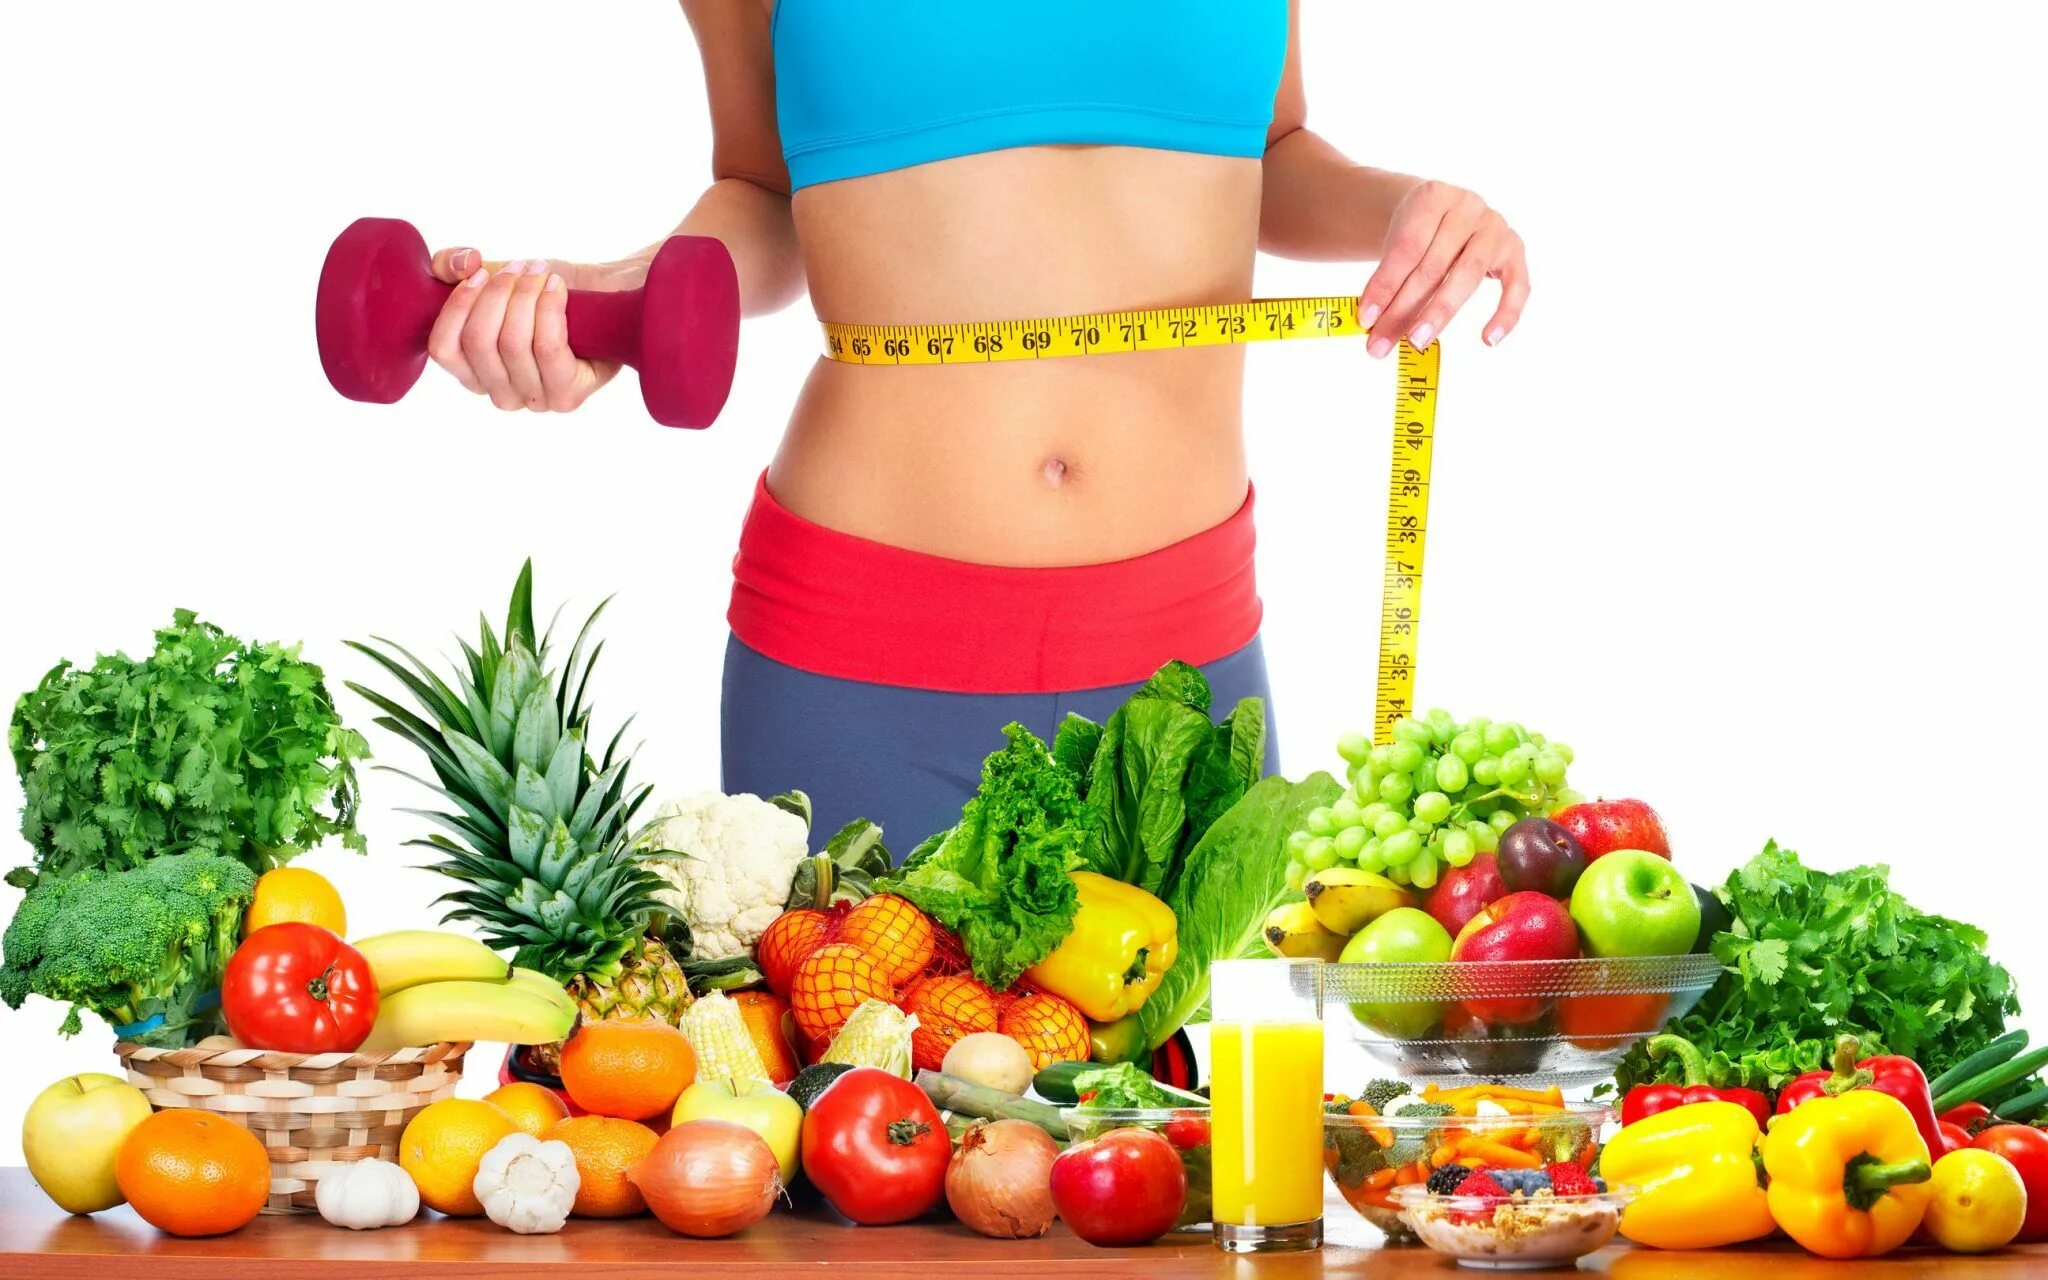 Fast diet. Здоровое питание. Стройная фигура правильное питание. Фитнес и правильное питание. Здоровое тело.